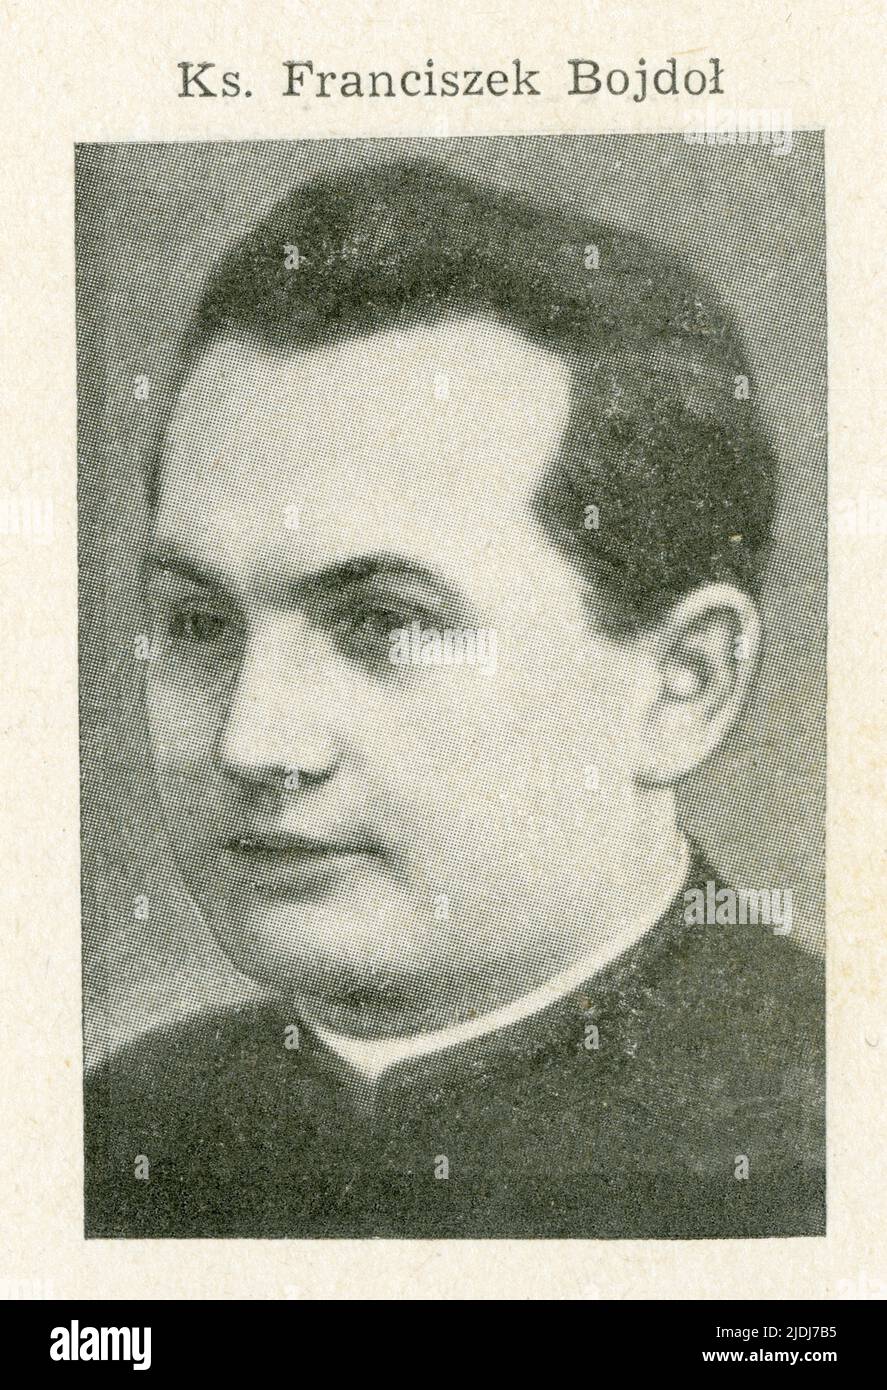 Bojdoł Franciszek (1905-1942).Urodził się 2 kwietnia 1905 w Wyrach w rodzinie robotnika Teodora i Marty z d.. Żogała. W 1910 roku zmarł mu ojciec, a w Foto Stock